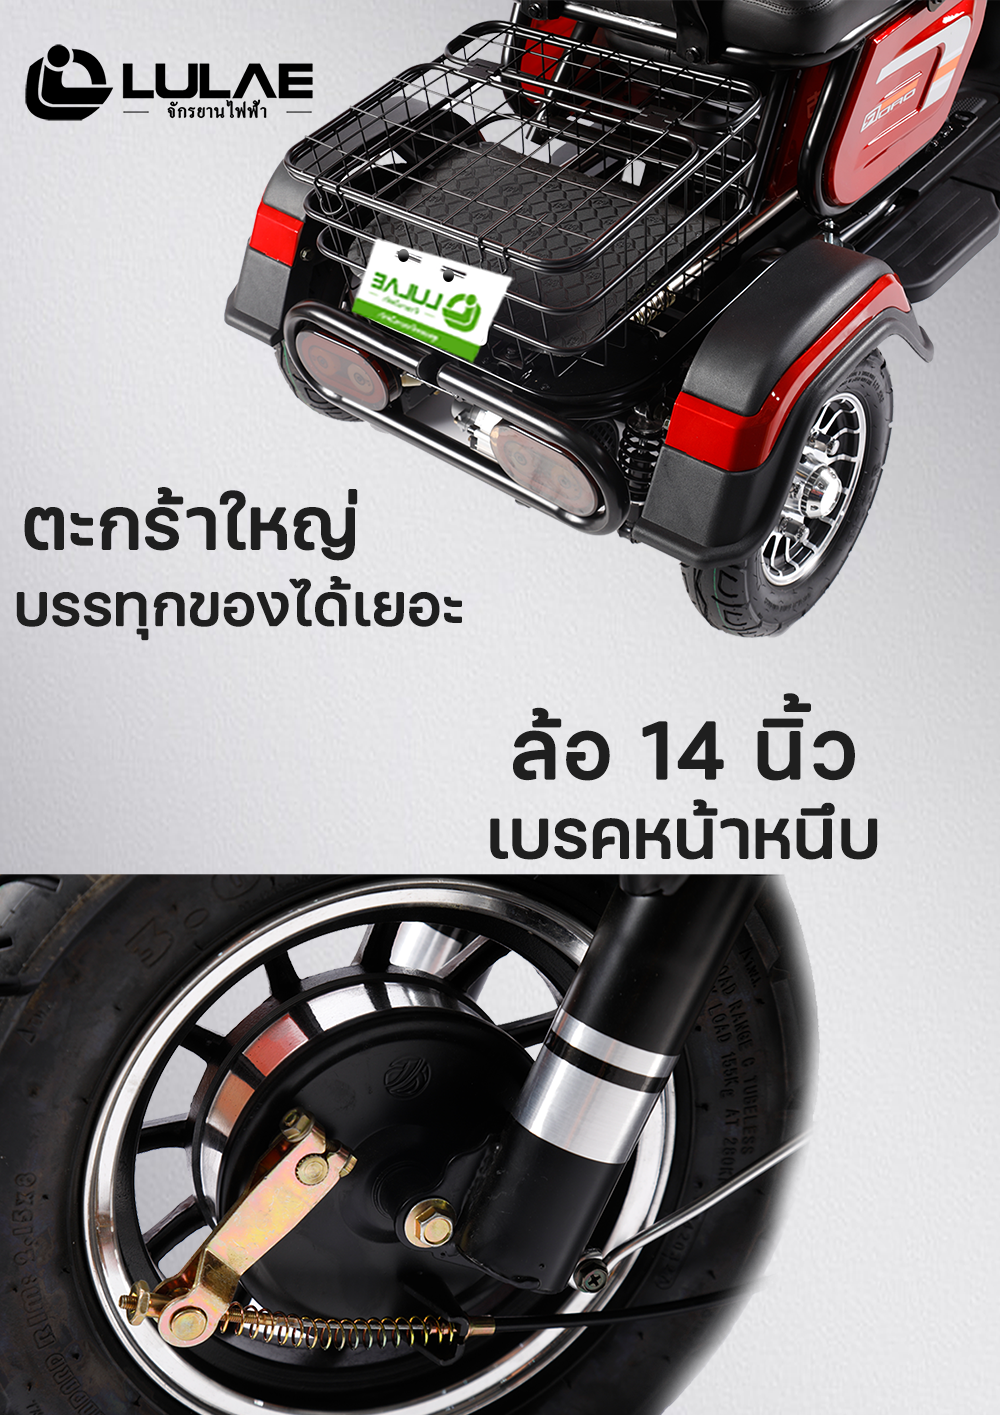 LULAE V10 สามล้อสำหรับผู้สูงวัย รถมอเตอร์ไซค์ไฟฟ้าสามล้อ electric rticycles